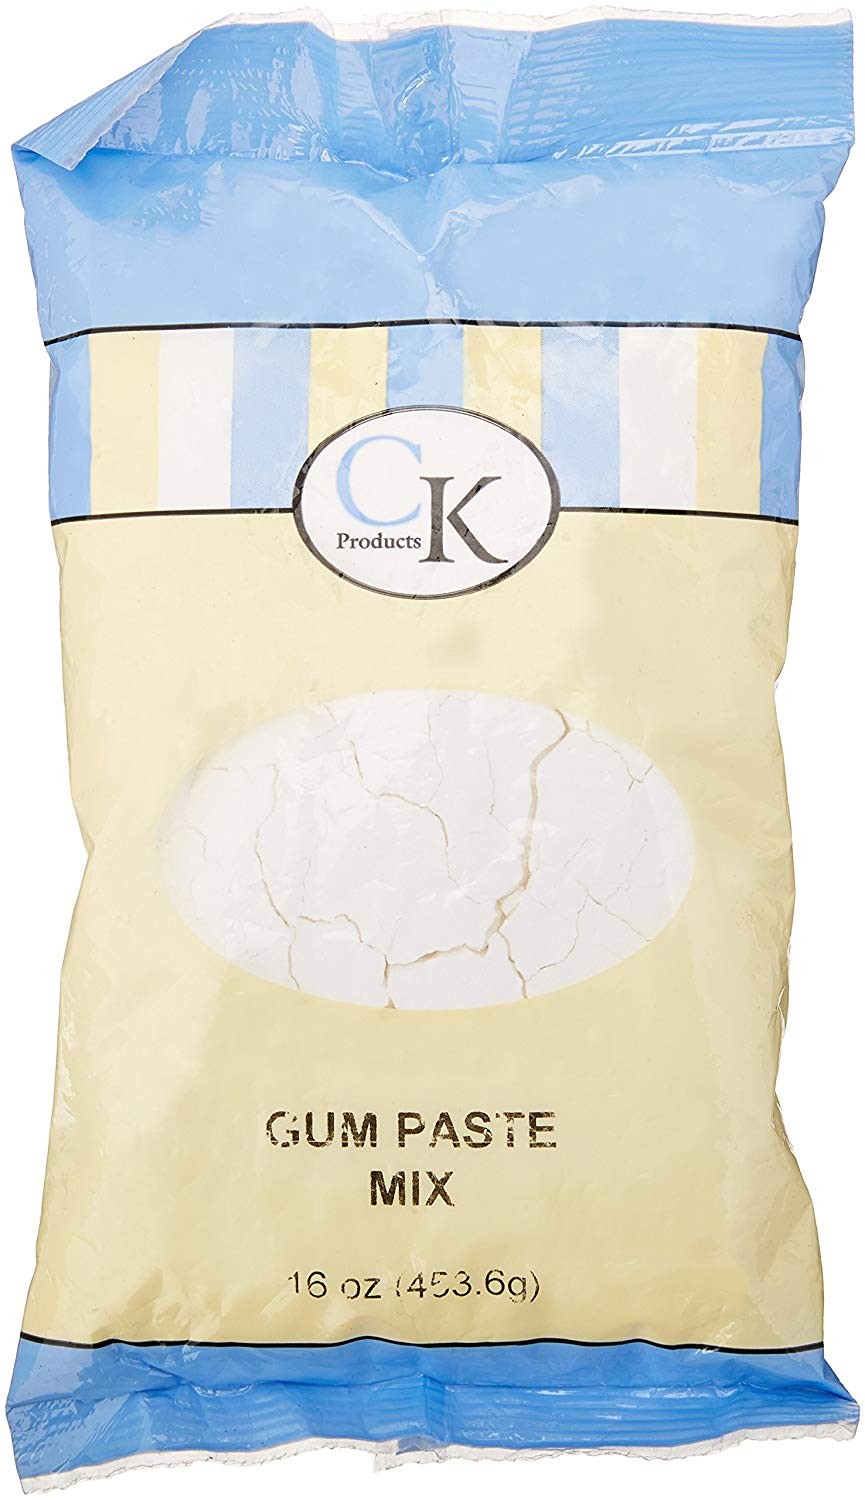 CK Products Gum Paste Mix - 16 oz